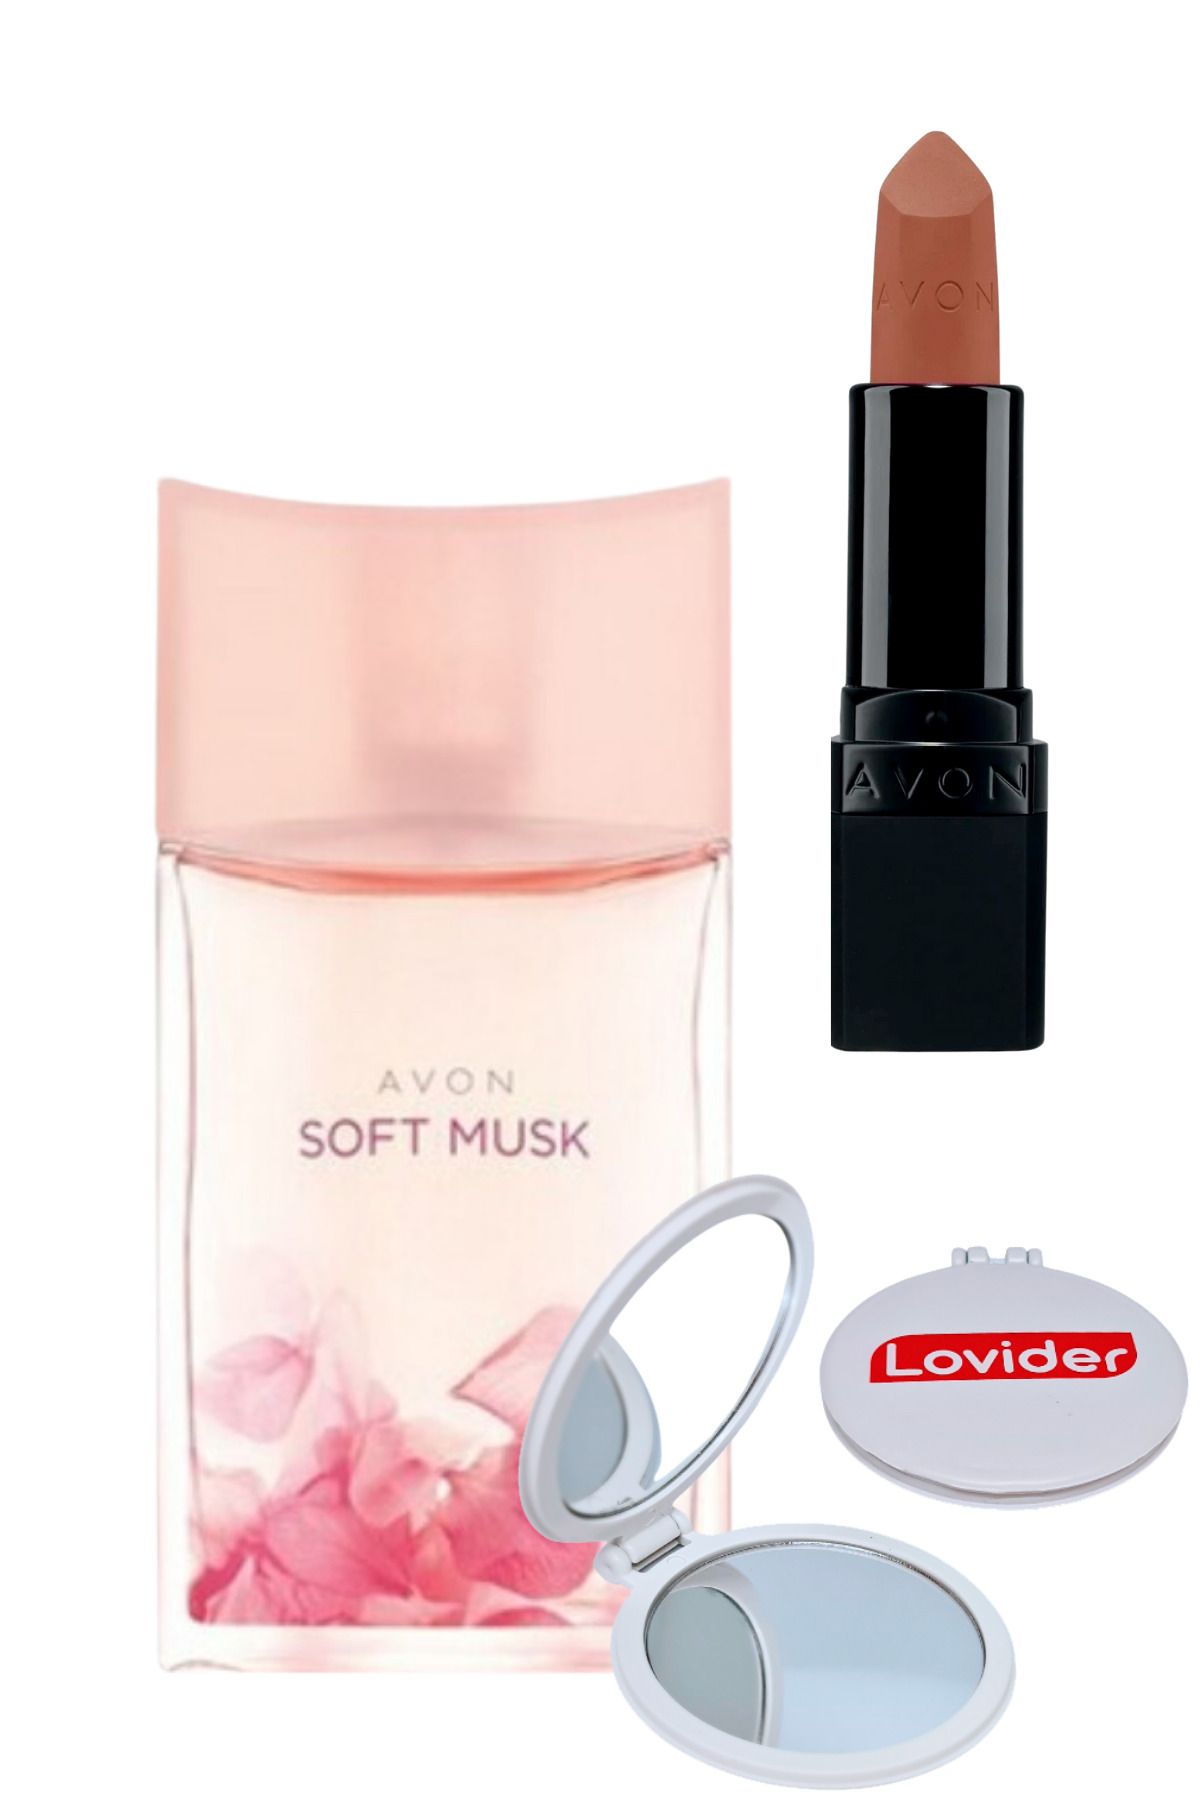 Avon Soft Musk Kadın Parfüm EDT 50ml + Ultra Mat Ruj Marvellous Mocha + Lovider Cep Aynası Hediye